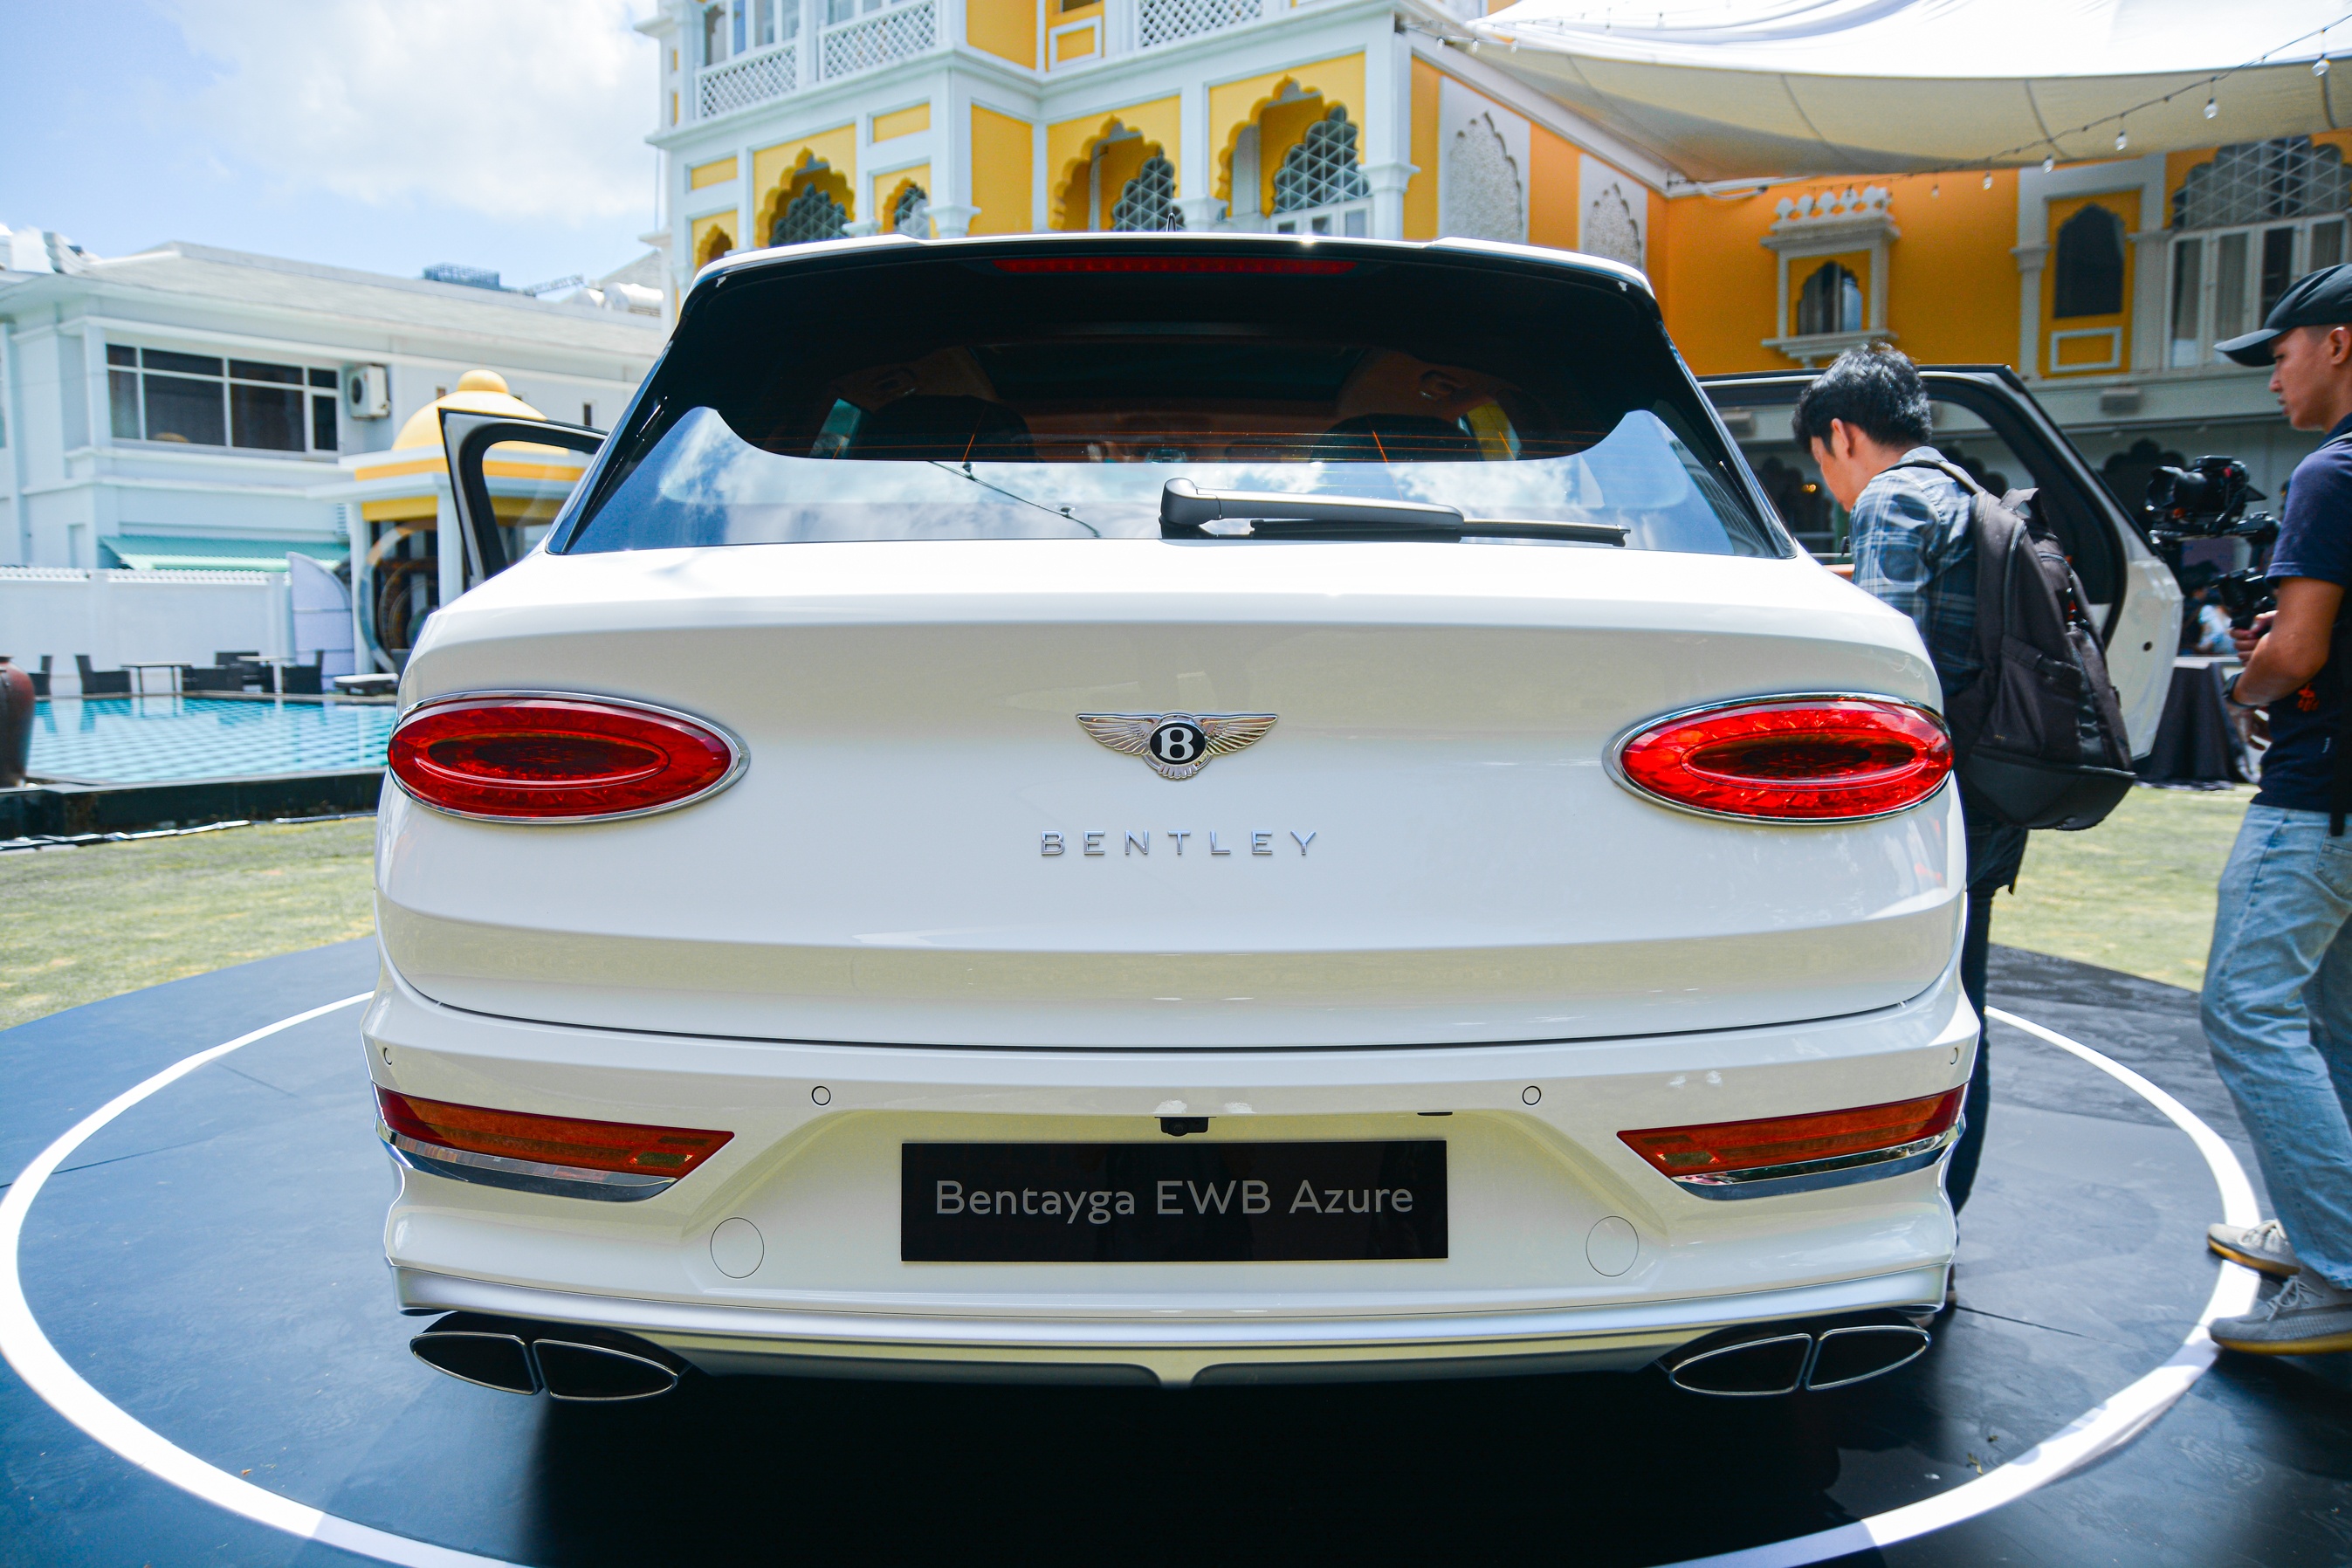 Chi tiết Bentley Bentayga EWB Azure tại Việt Nam, giá gần 21 tỷ đồng - ảnh 5